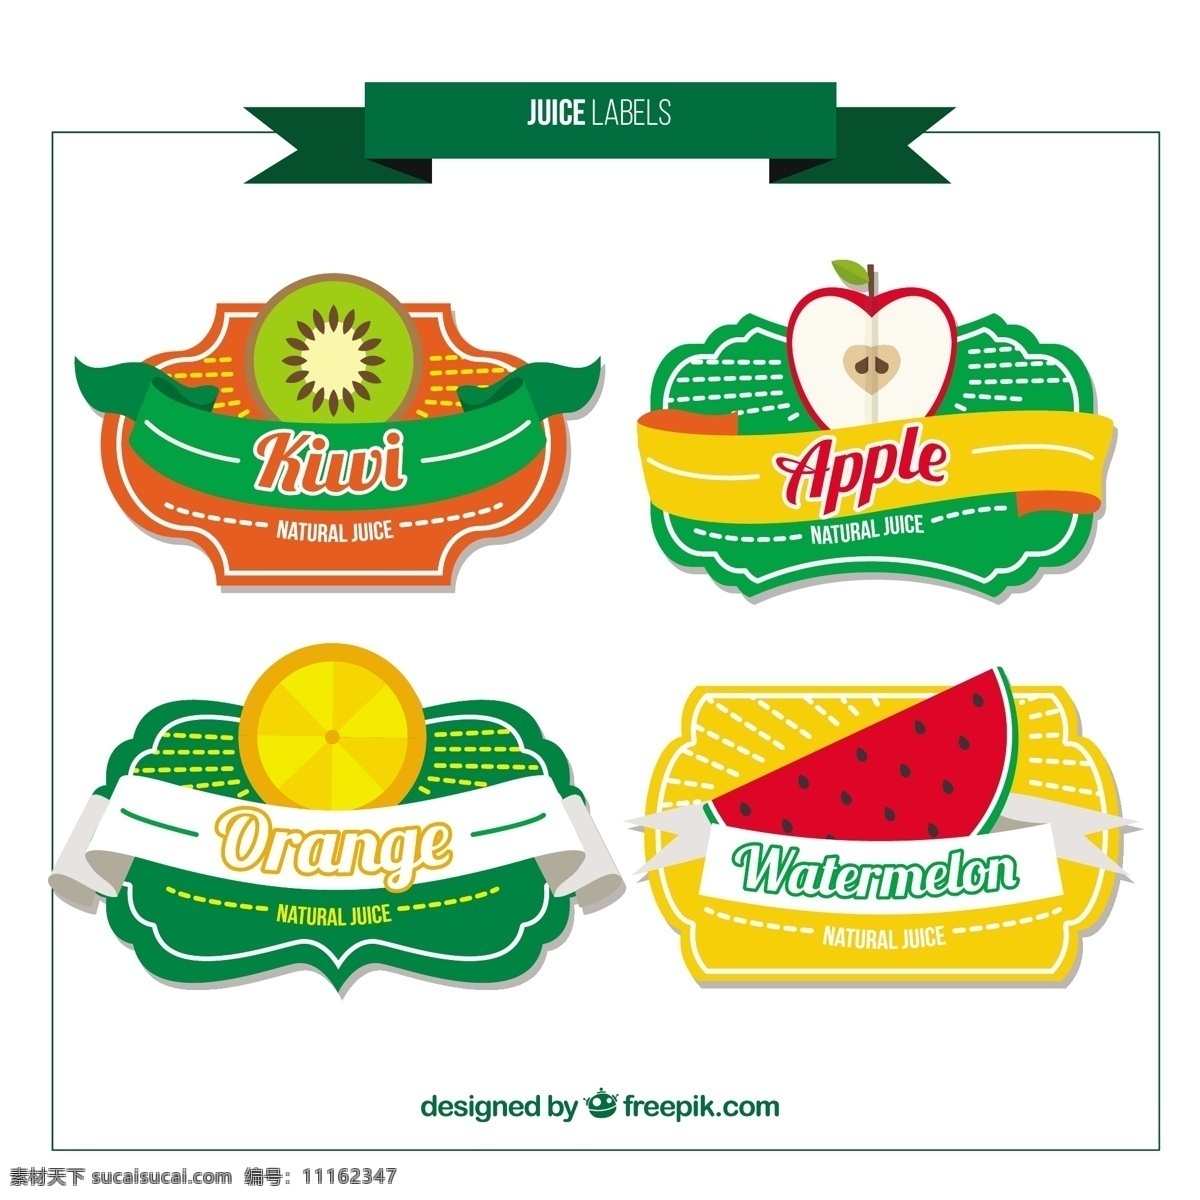 可爱 水果 果汁 标签 葡萄酒 食品 夏季 徽章 苹果 平 可爱的 橙 饮料 热带 扁平 贴纸 自然 健康的